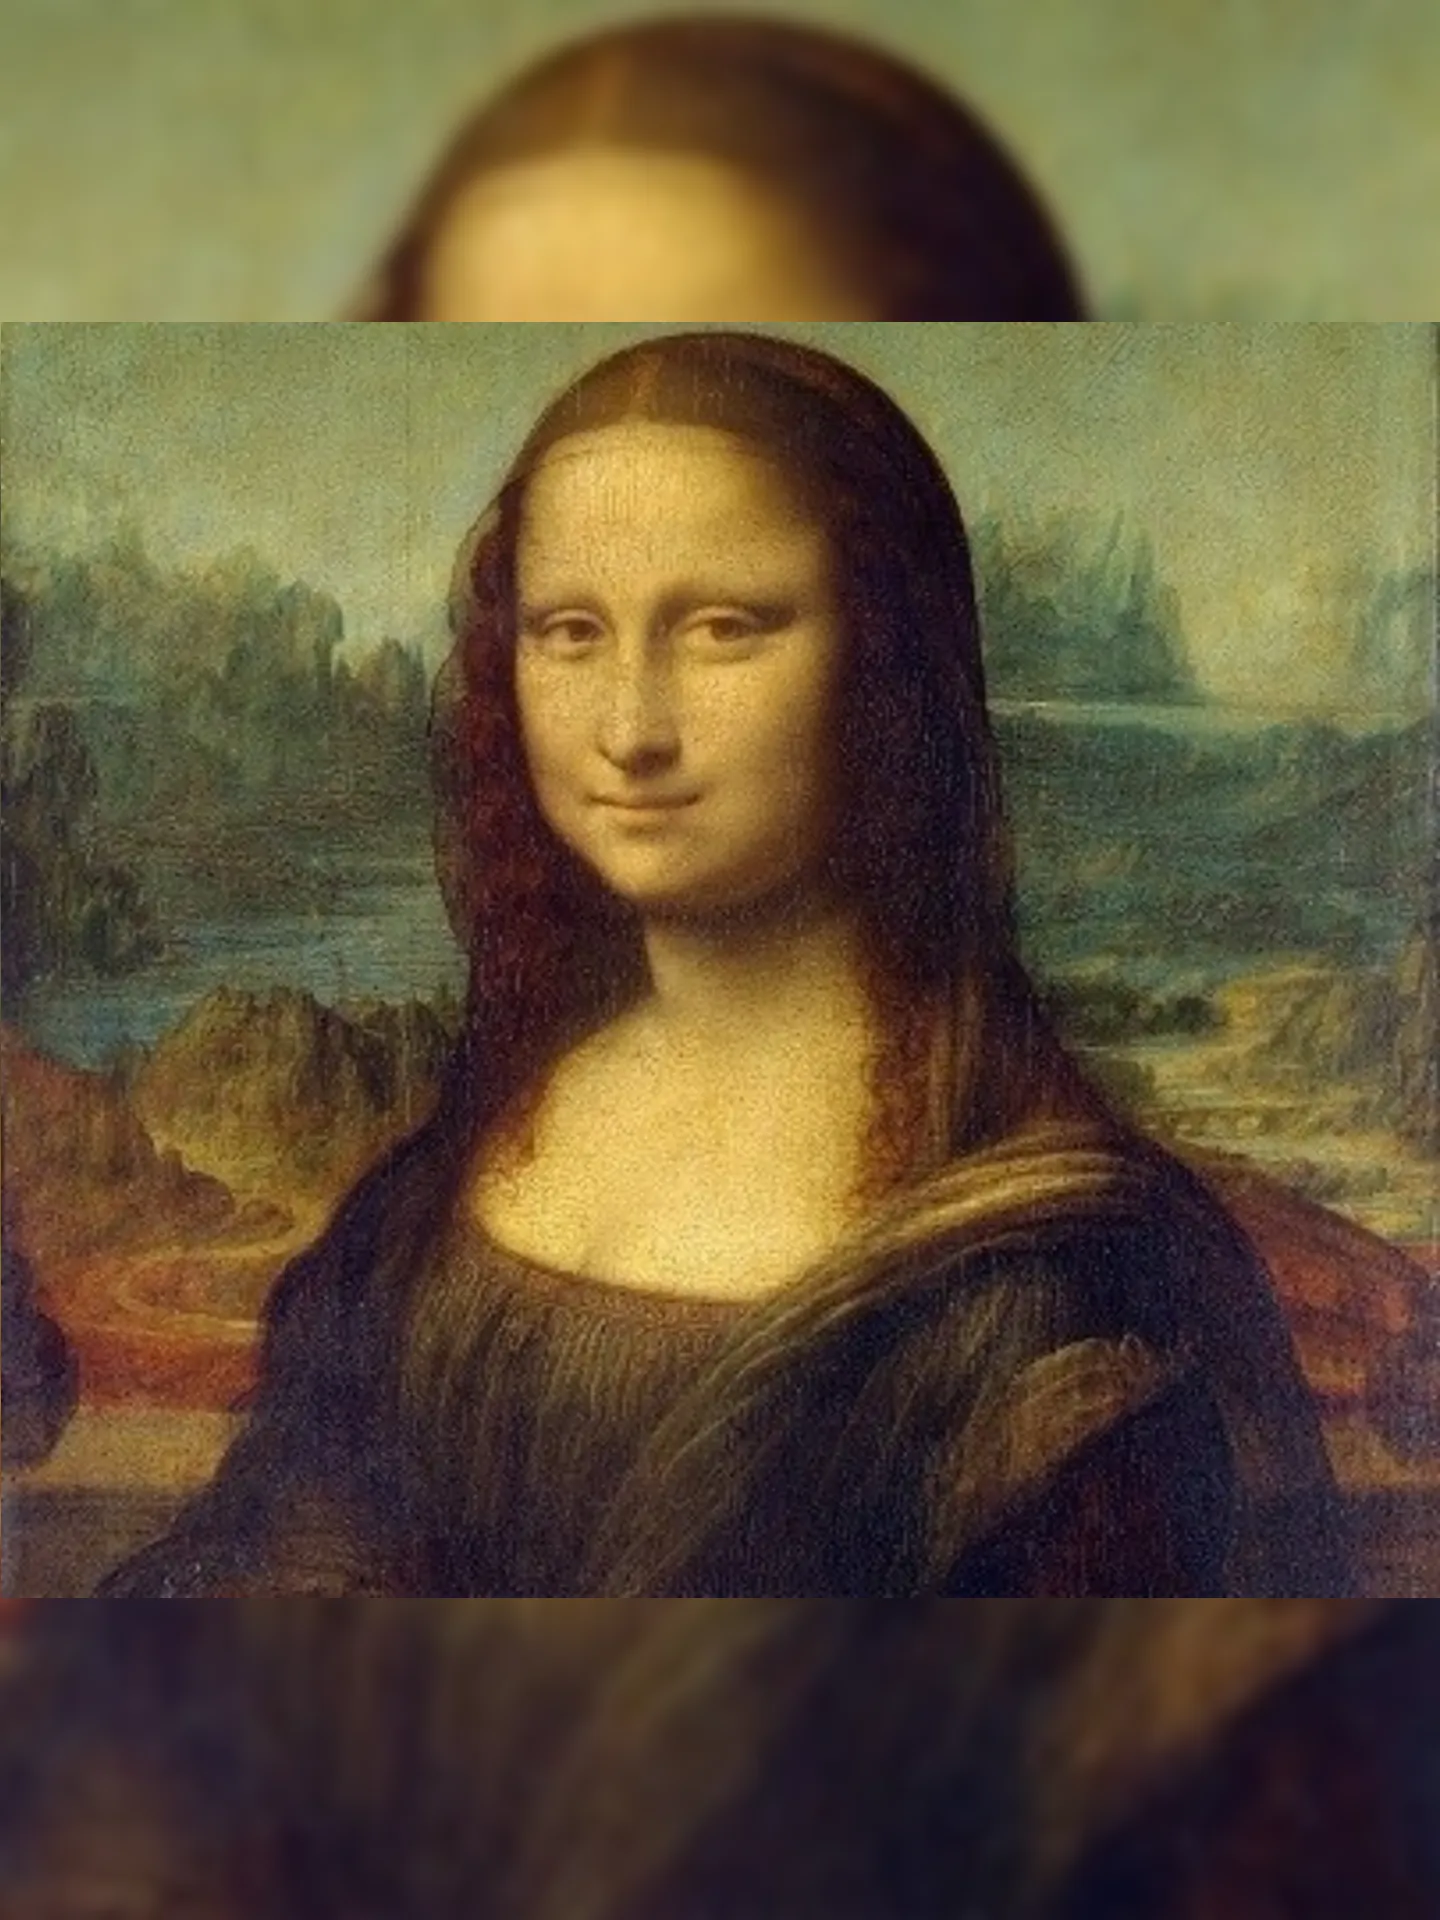 Obra é a mais conhecida de da Vinci